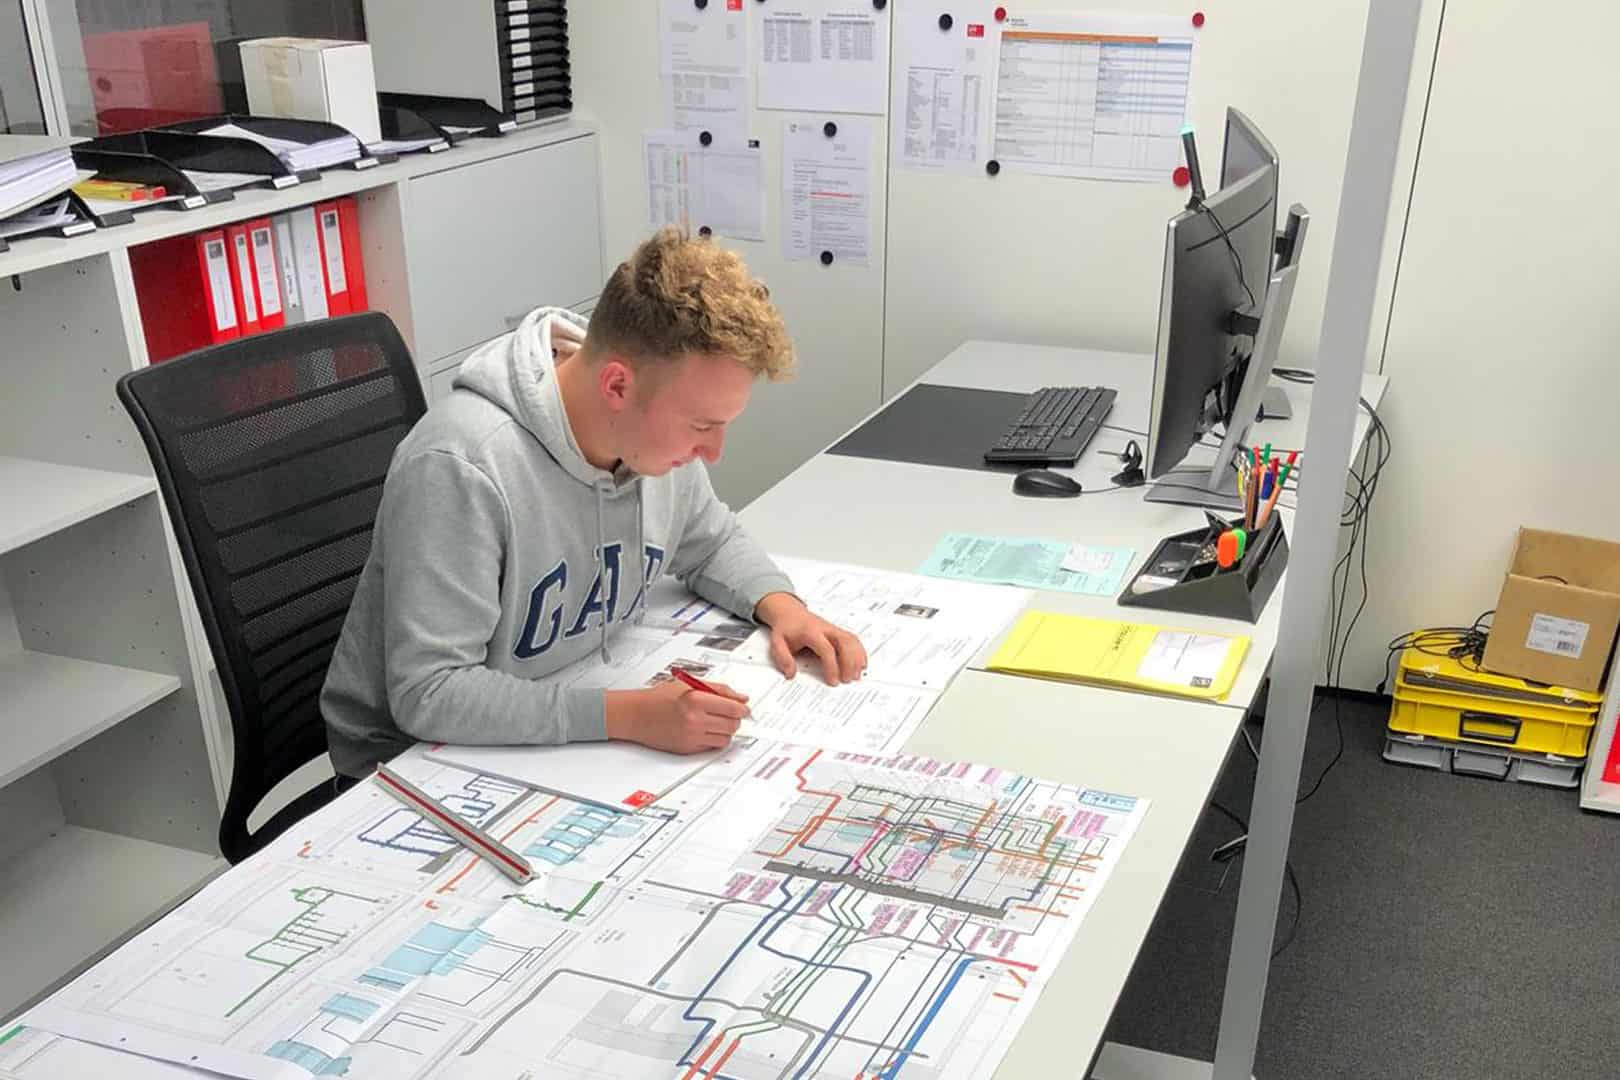 Gebäudetechnikplaner Lüftung in Ausbildung am Schreibtisch am Zeichnen eines Plans